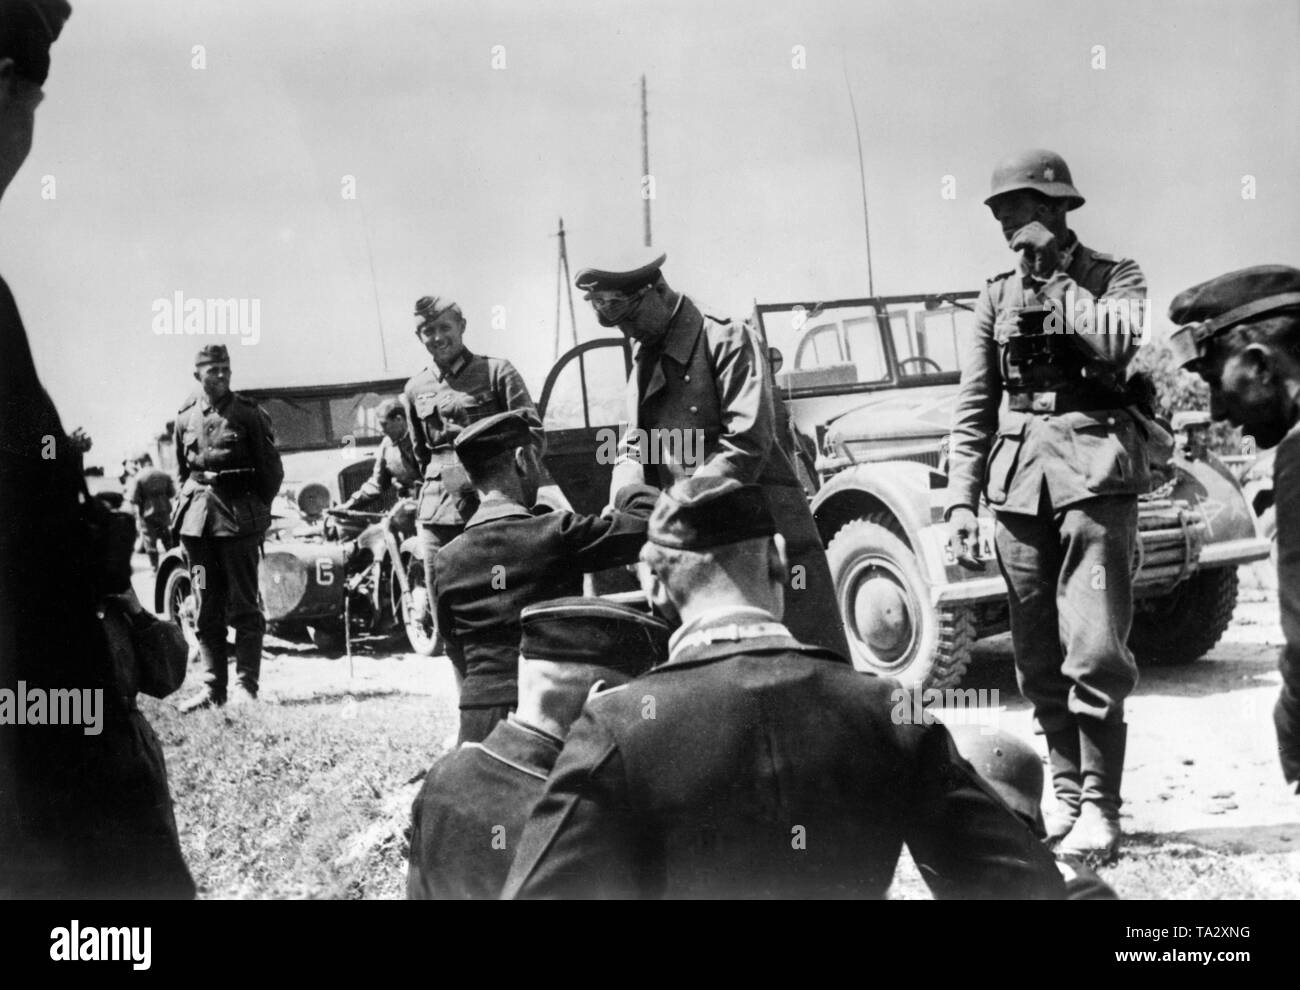 Abteilung Kommandeur, Generalleutnant Hermann Meyer-Rabingen (stehend, 2. von rechts) bei einem Commander treffen. Im Hintergrund mehrere Fahrzeuge der Wehrmacht. Foto: kriegsberichterstatter Lucke. Stockfoto